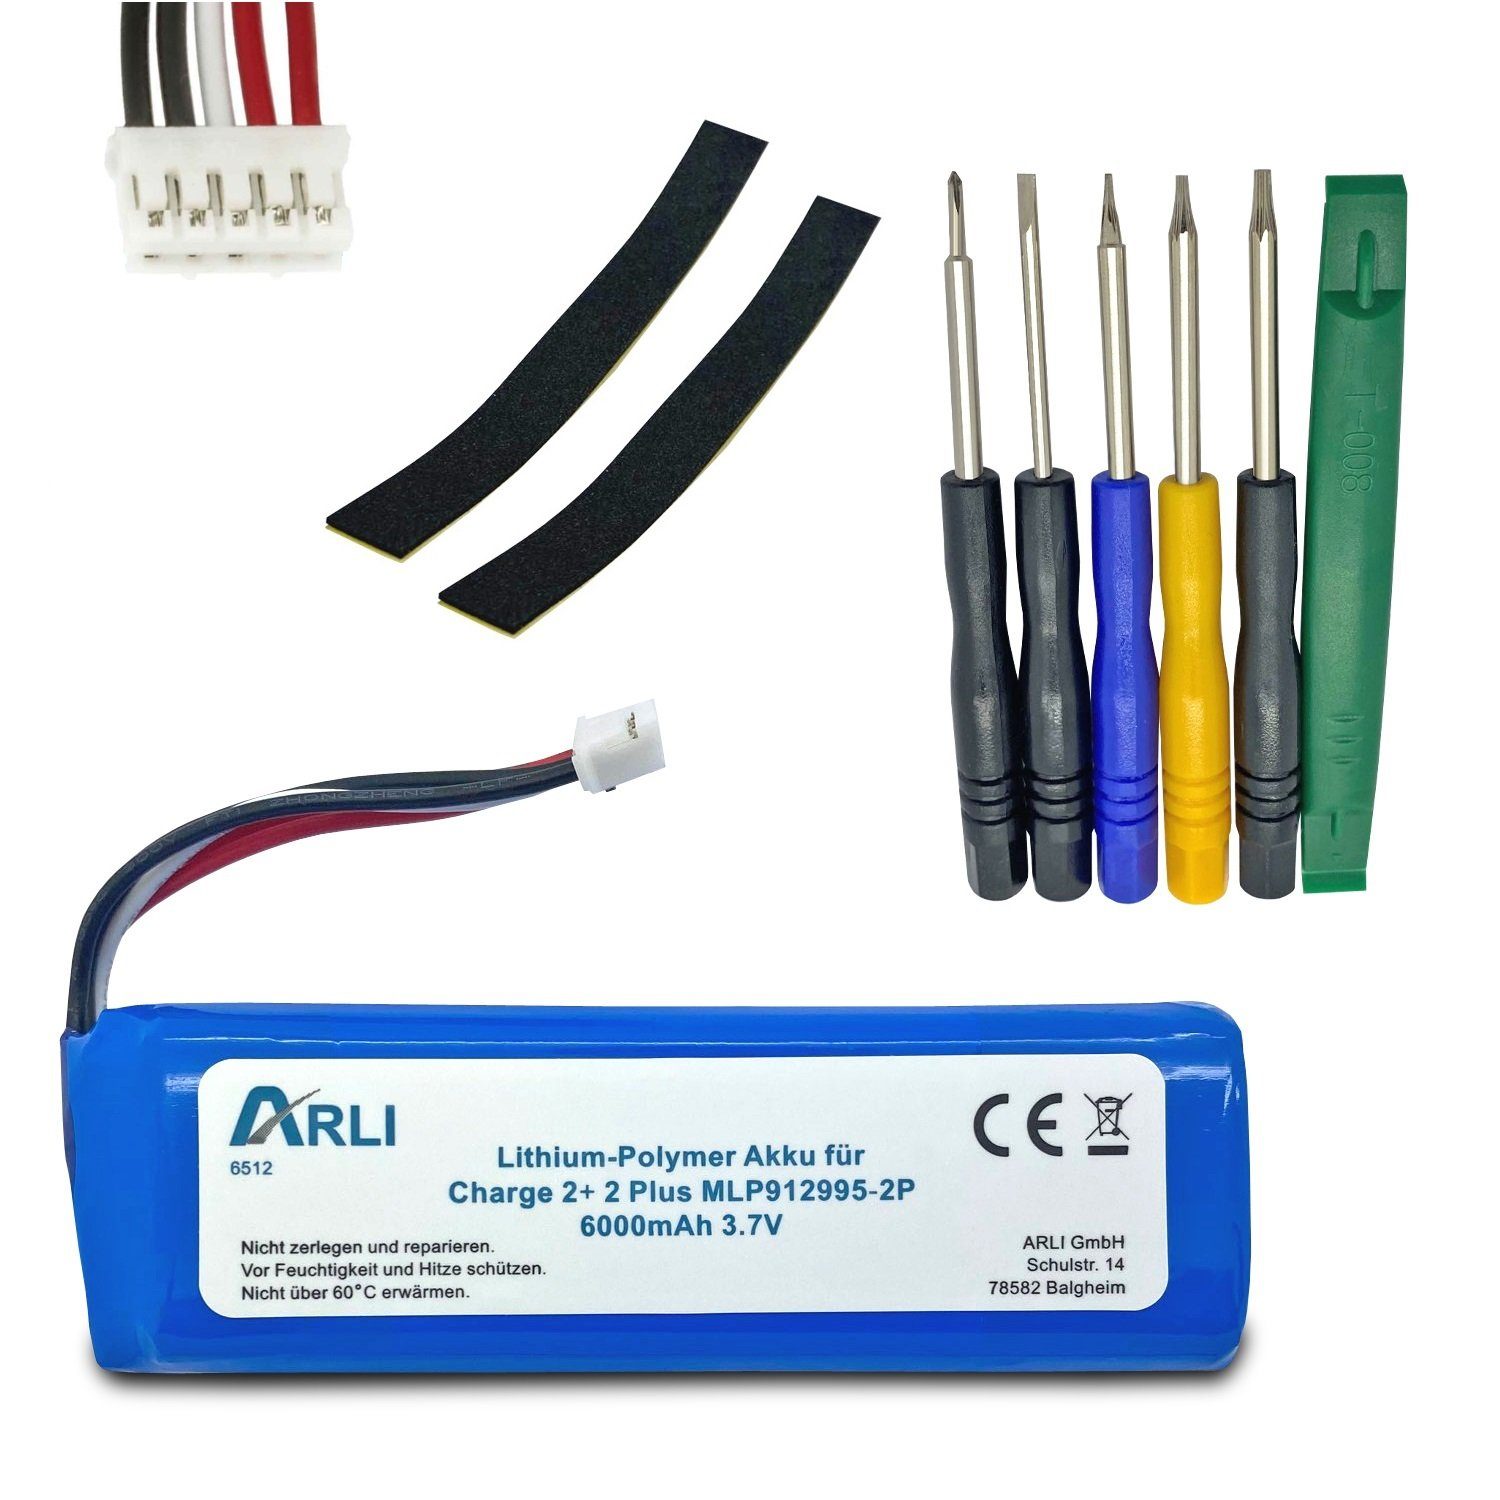 ARLI Akku passend JBL Li-Polymer 2+ 2 MLP912995-2P Batterie Charge Akku Plus